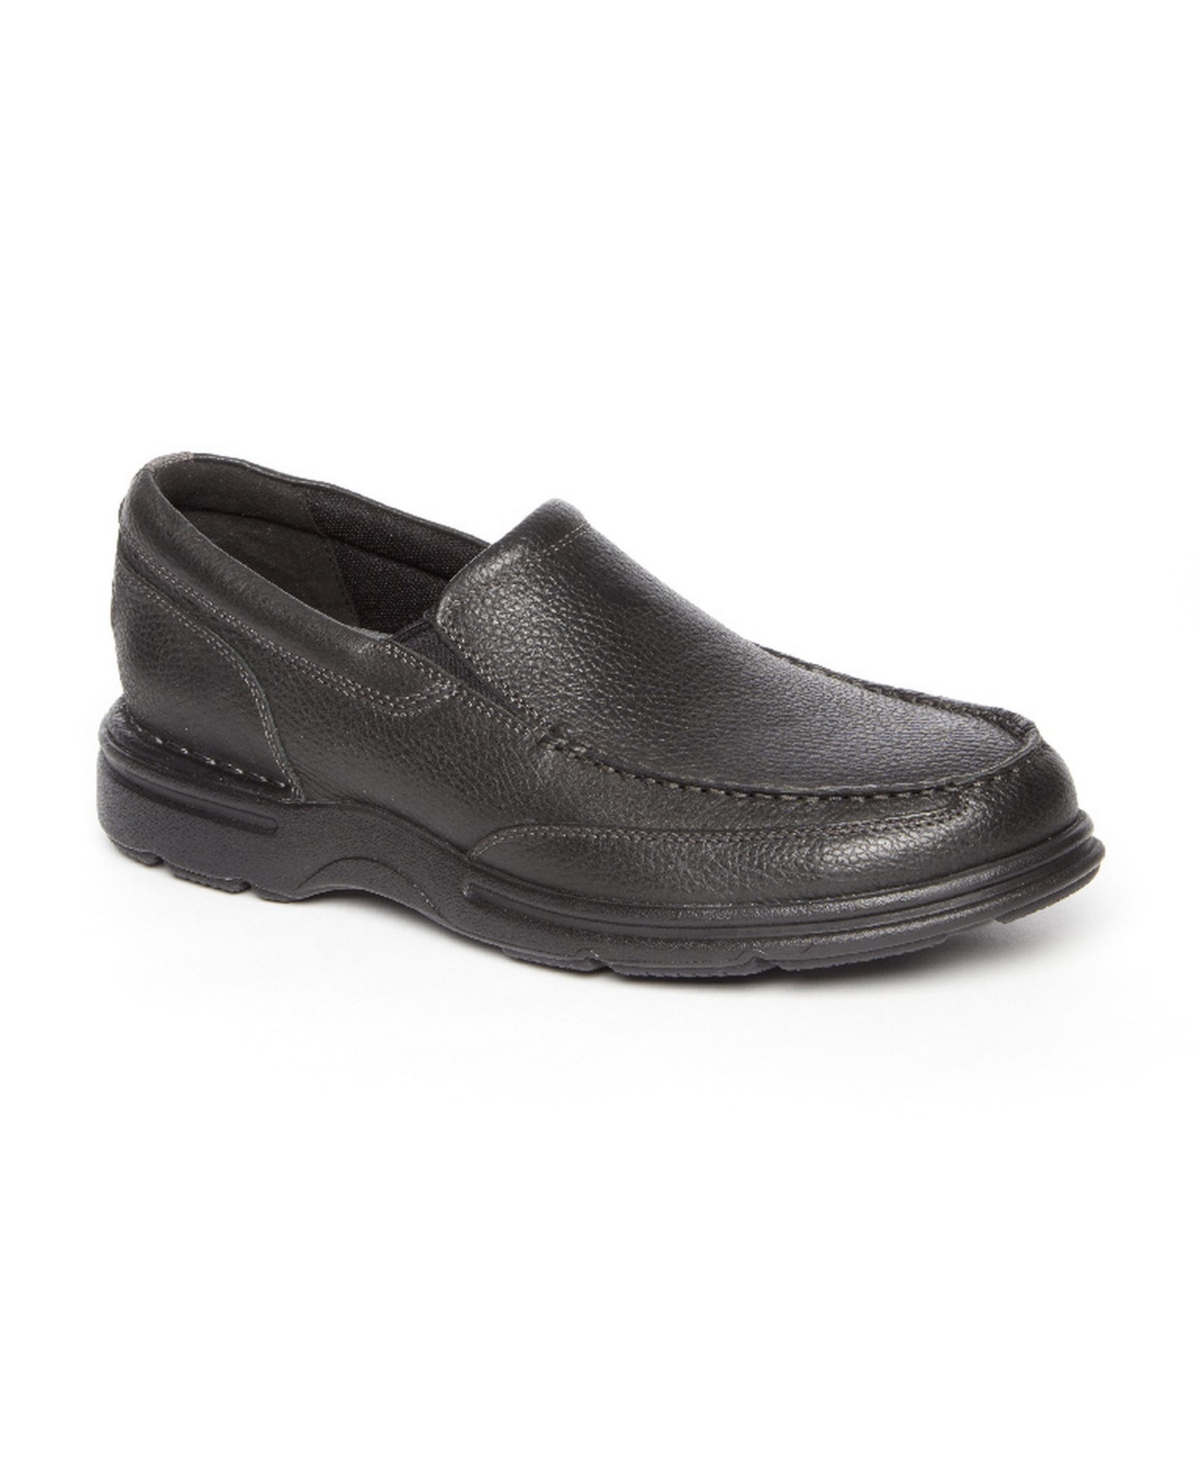 Men's Eureka Plus Slip On Shoes - Black